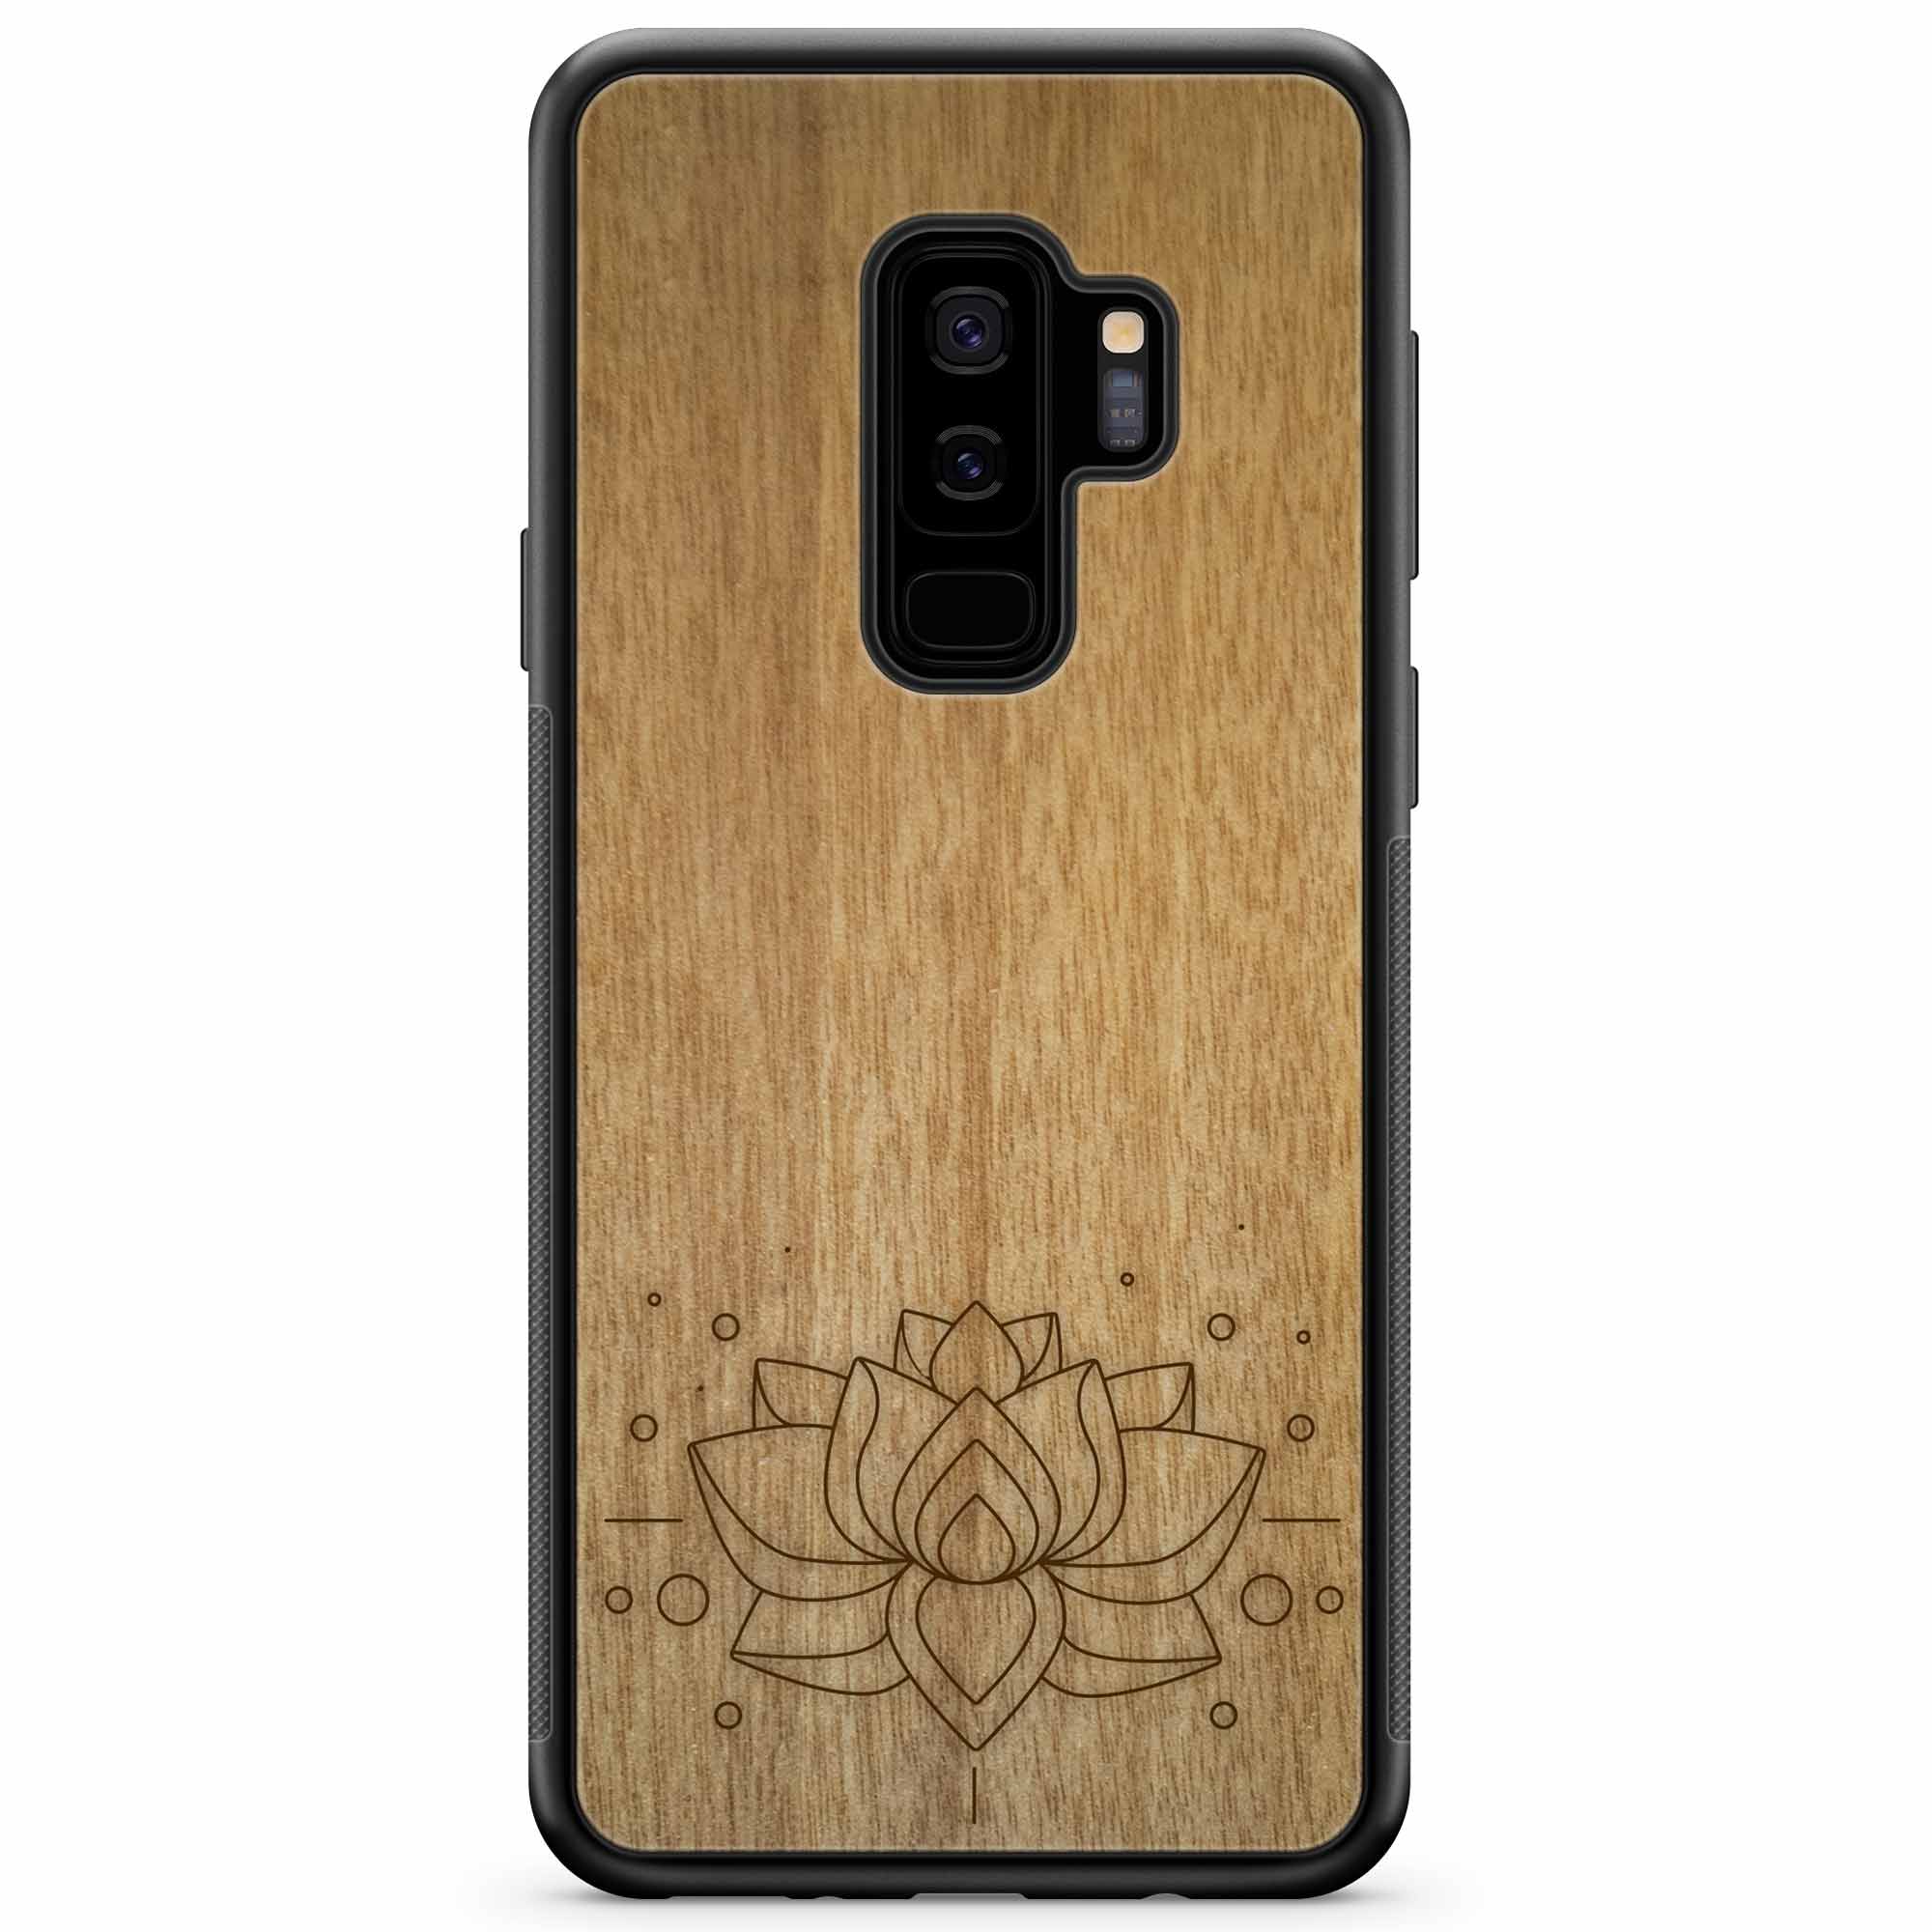 Custodia per telefono in legno con incisione Lotus Samsung S9 Plus